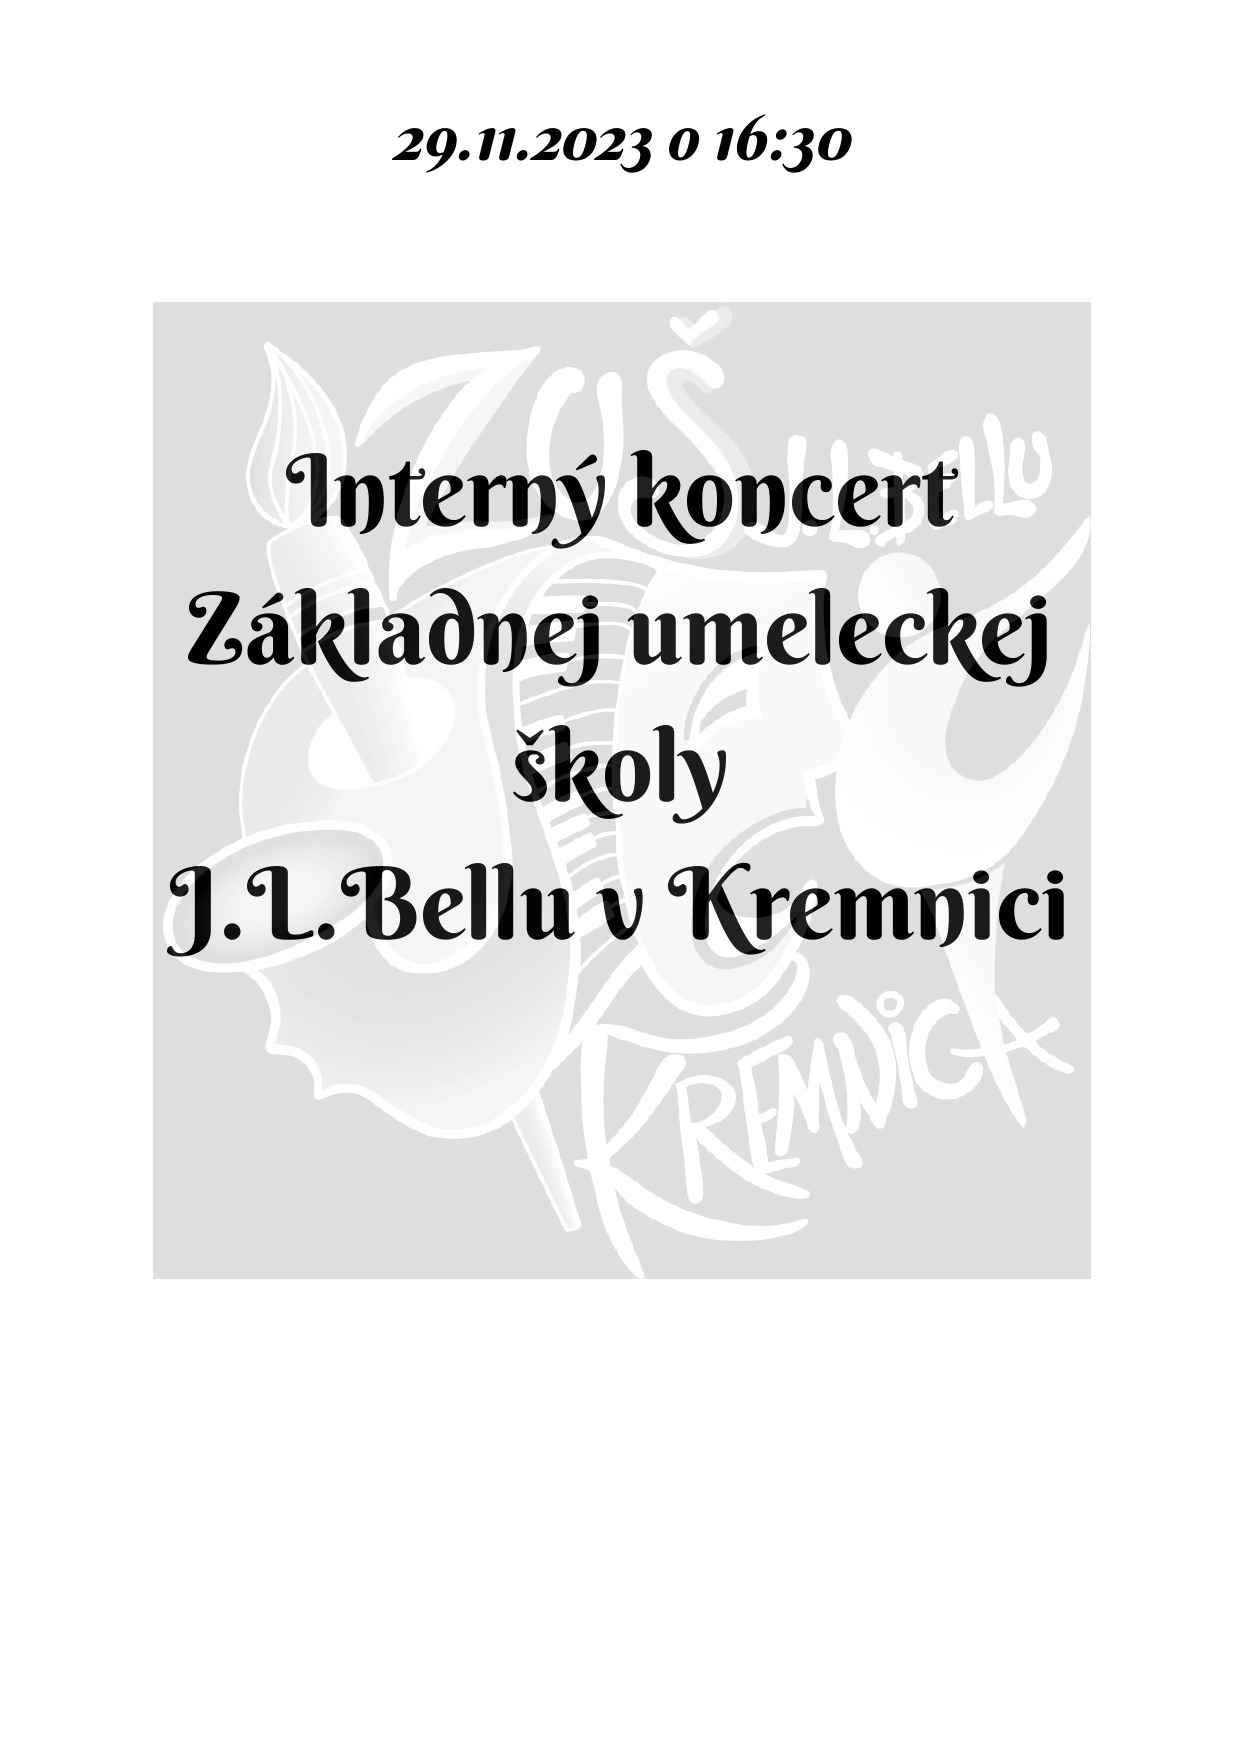 Pozvánka na interný koncert dnes 29.11. o 16:30 v sále ZUŠ, alebo online - Obrázok 1